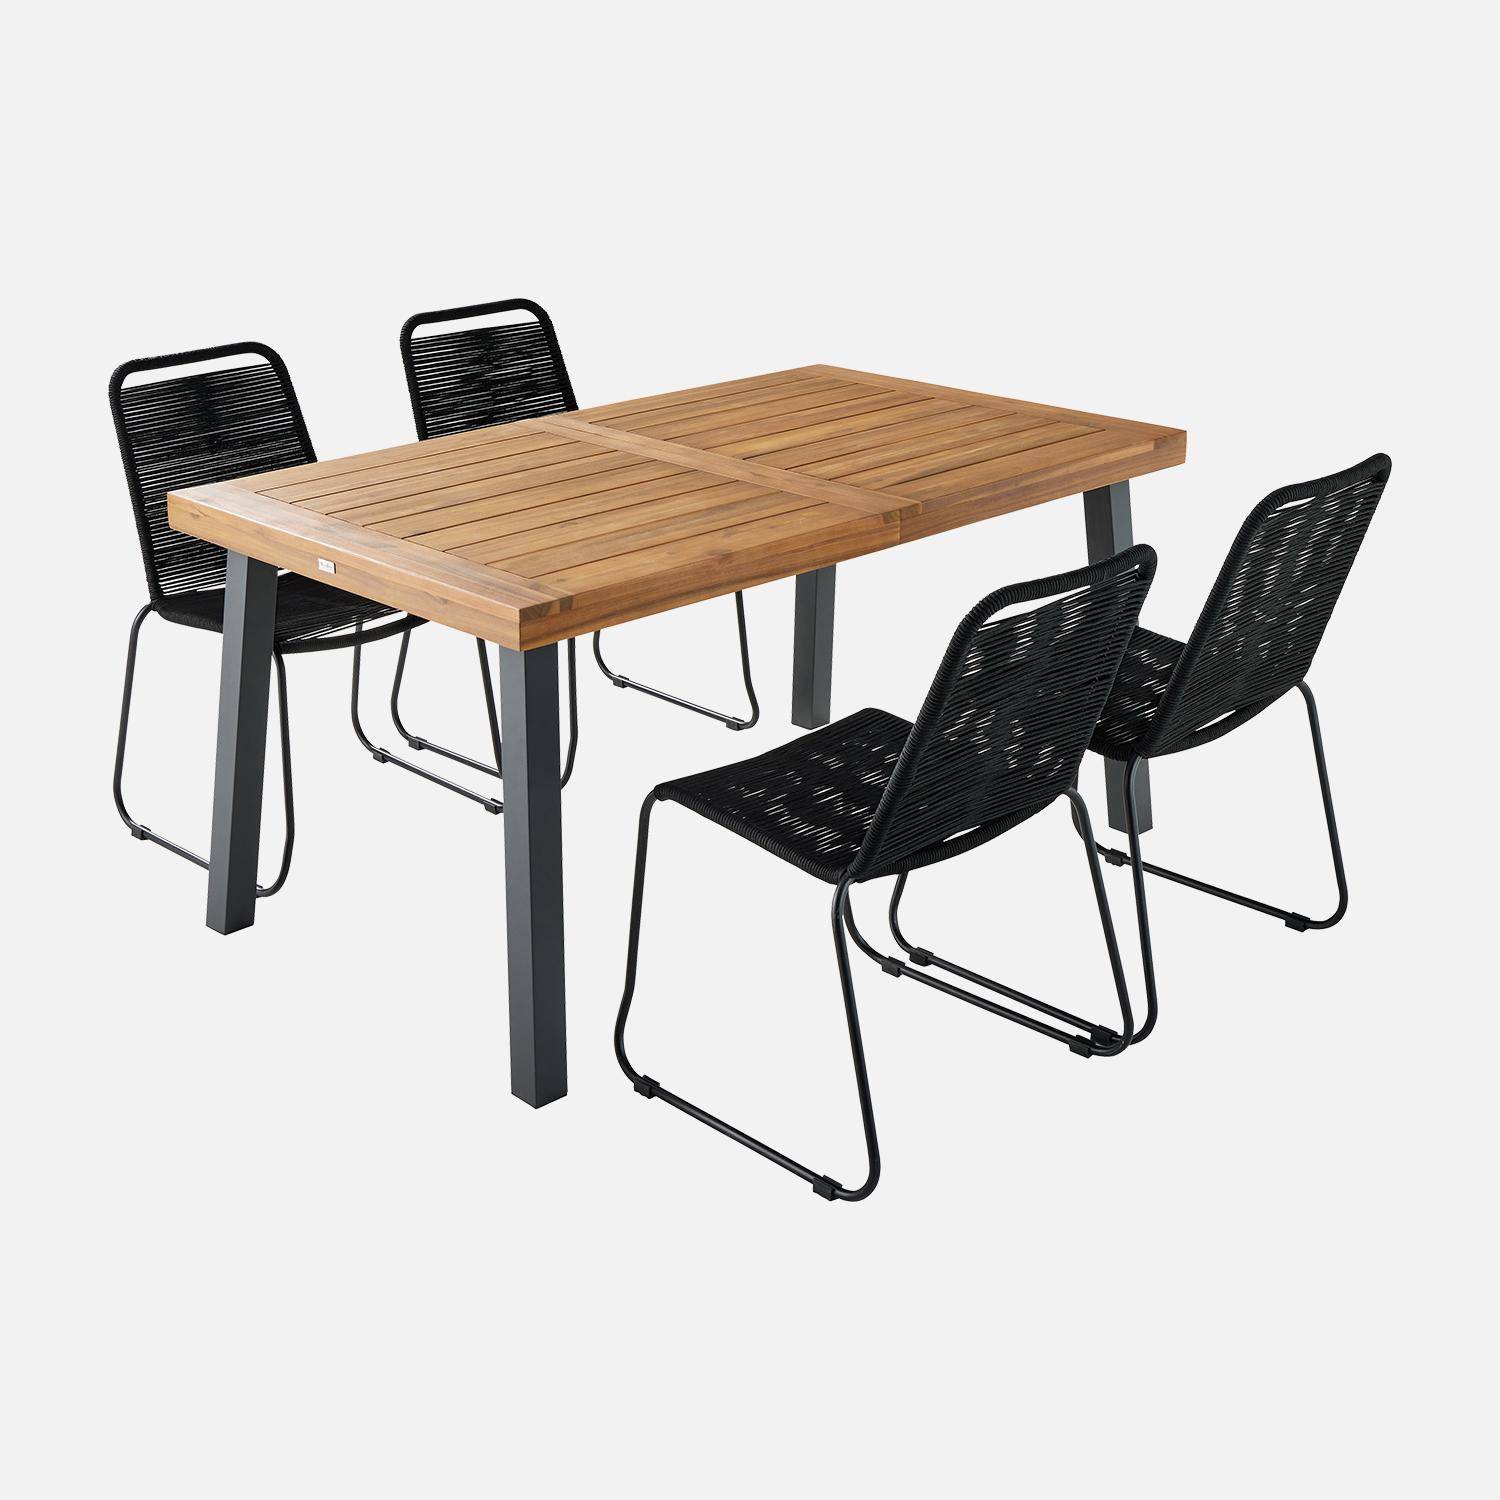 Table intérieur / extérieur Santana en bois et métal, 150cm + 4 chaises en corde BRASILIA noires, empilables,sweeek,Photo3